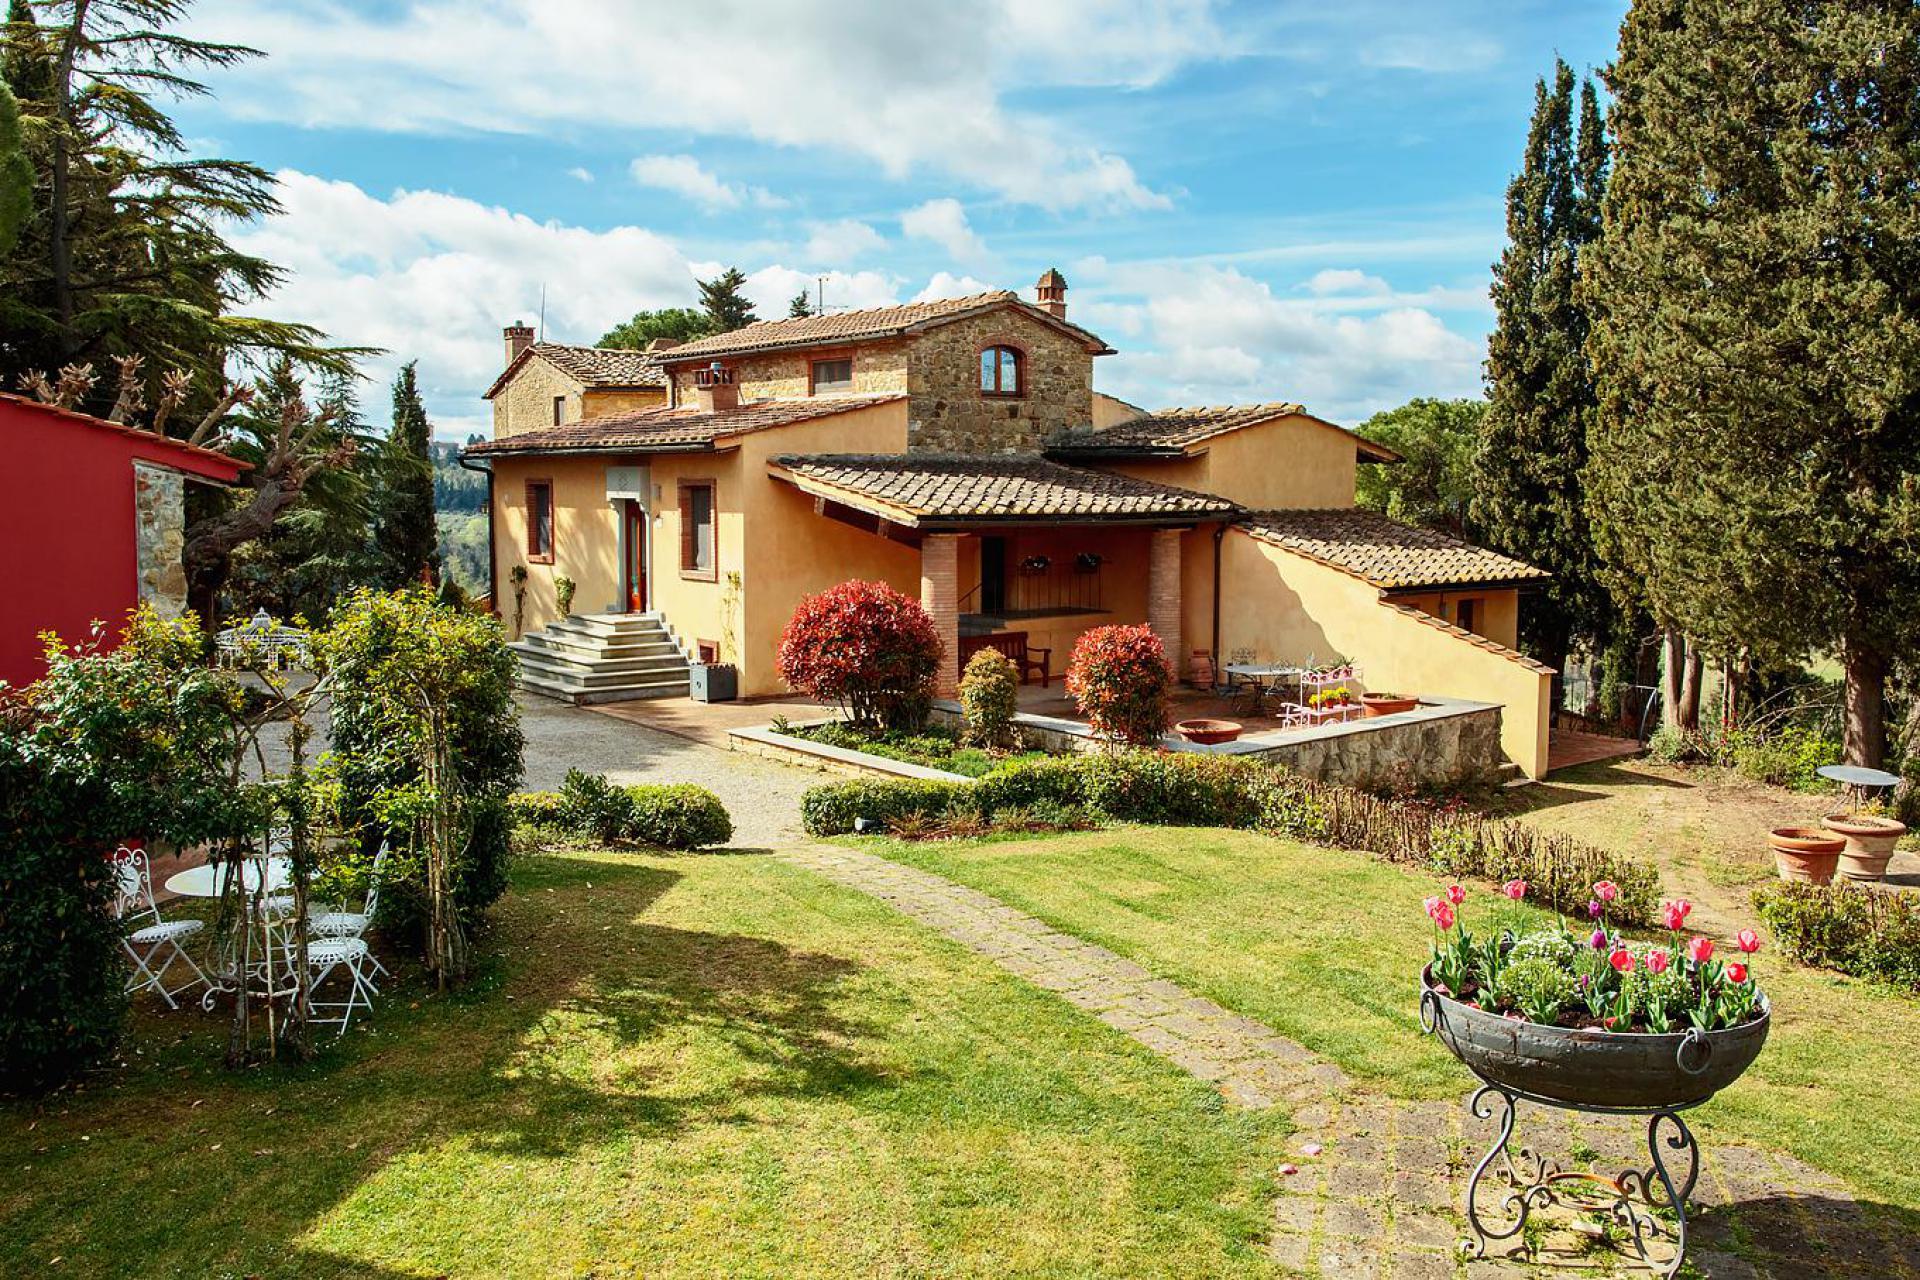 Agriturismo Tuscany Luxury agriturismo near San Gimignano in Tuscany